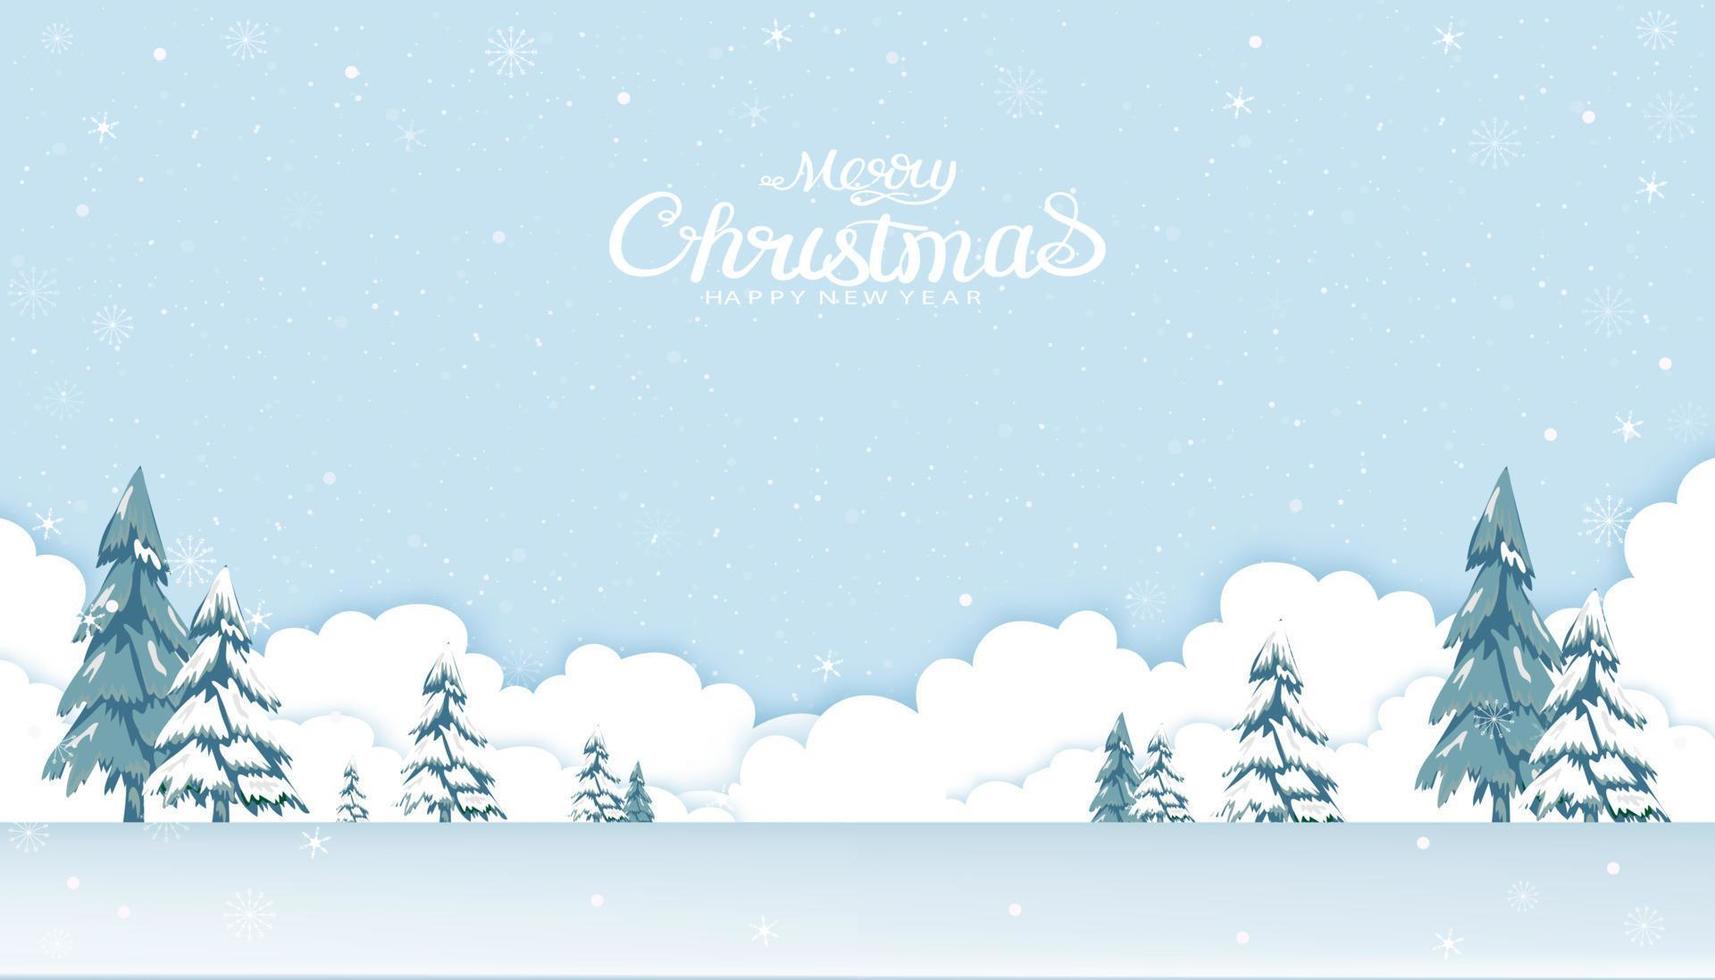 glad jul och Lycklig ny år hälsning kort, vektor illustration papper skära vinter- scen landskap med tall träd, snöflingor, vit moln scape och snöig på blå himmel bakgrund.